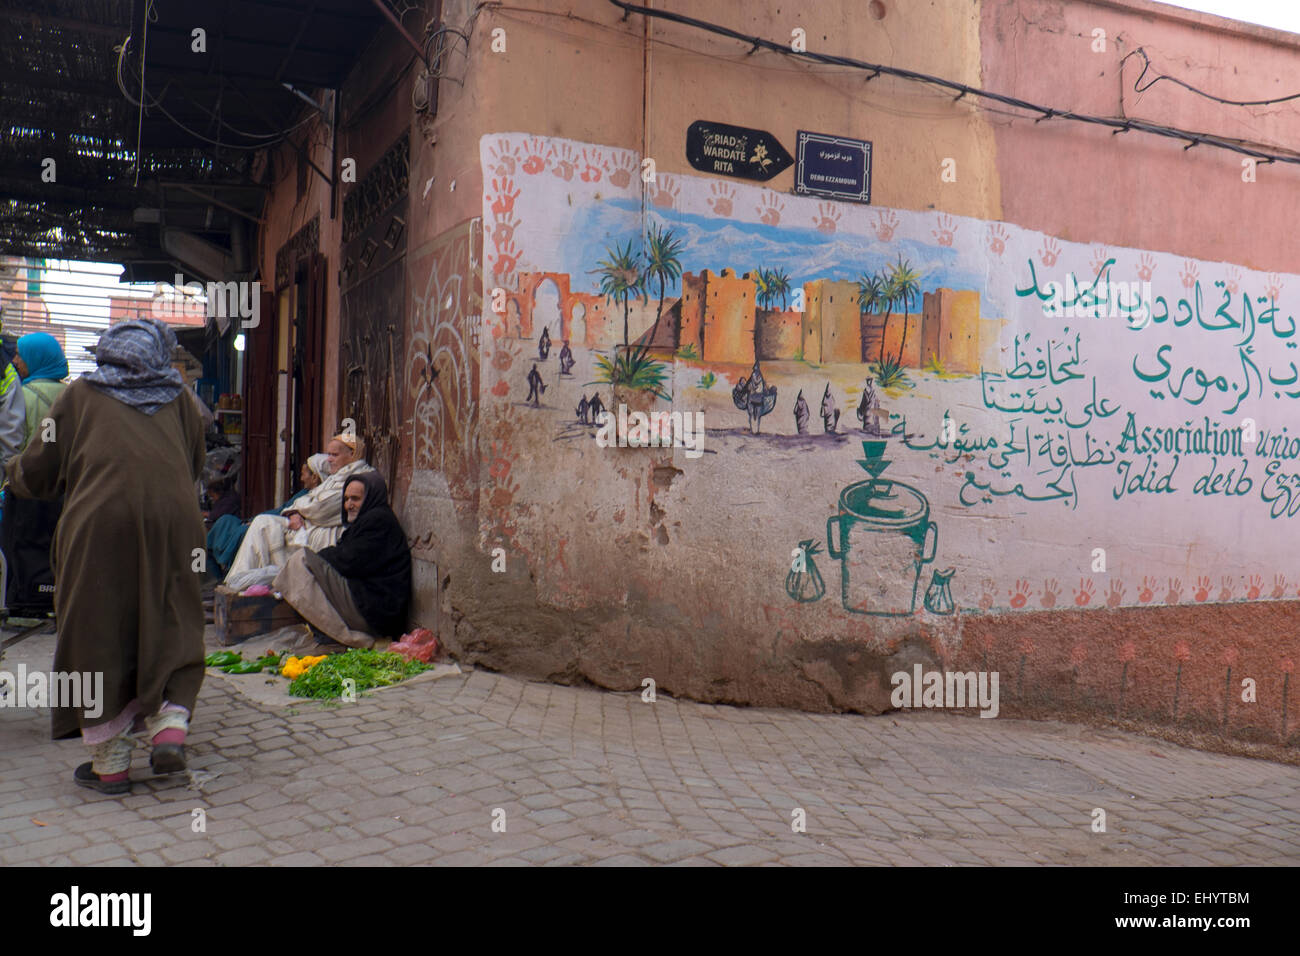 La peinture murale et le vendeur de rue, Medina, vieille ville, Marrakech, Marrakech, Maroc, Afrique du Nord Banque D'Images